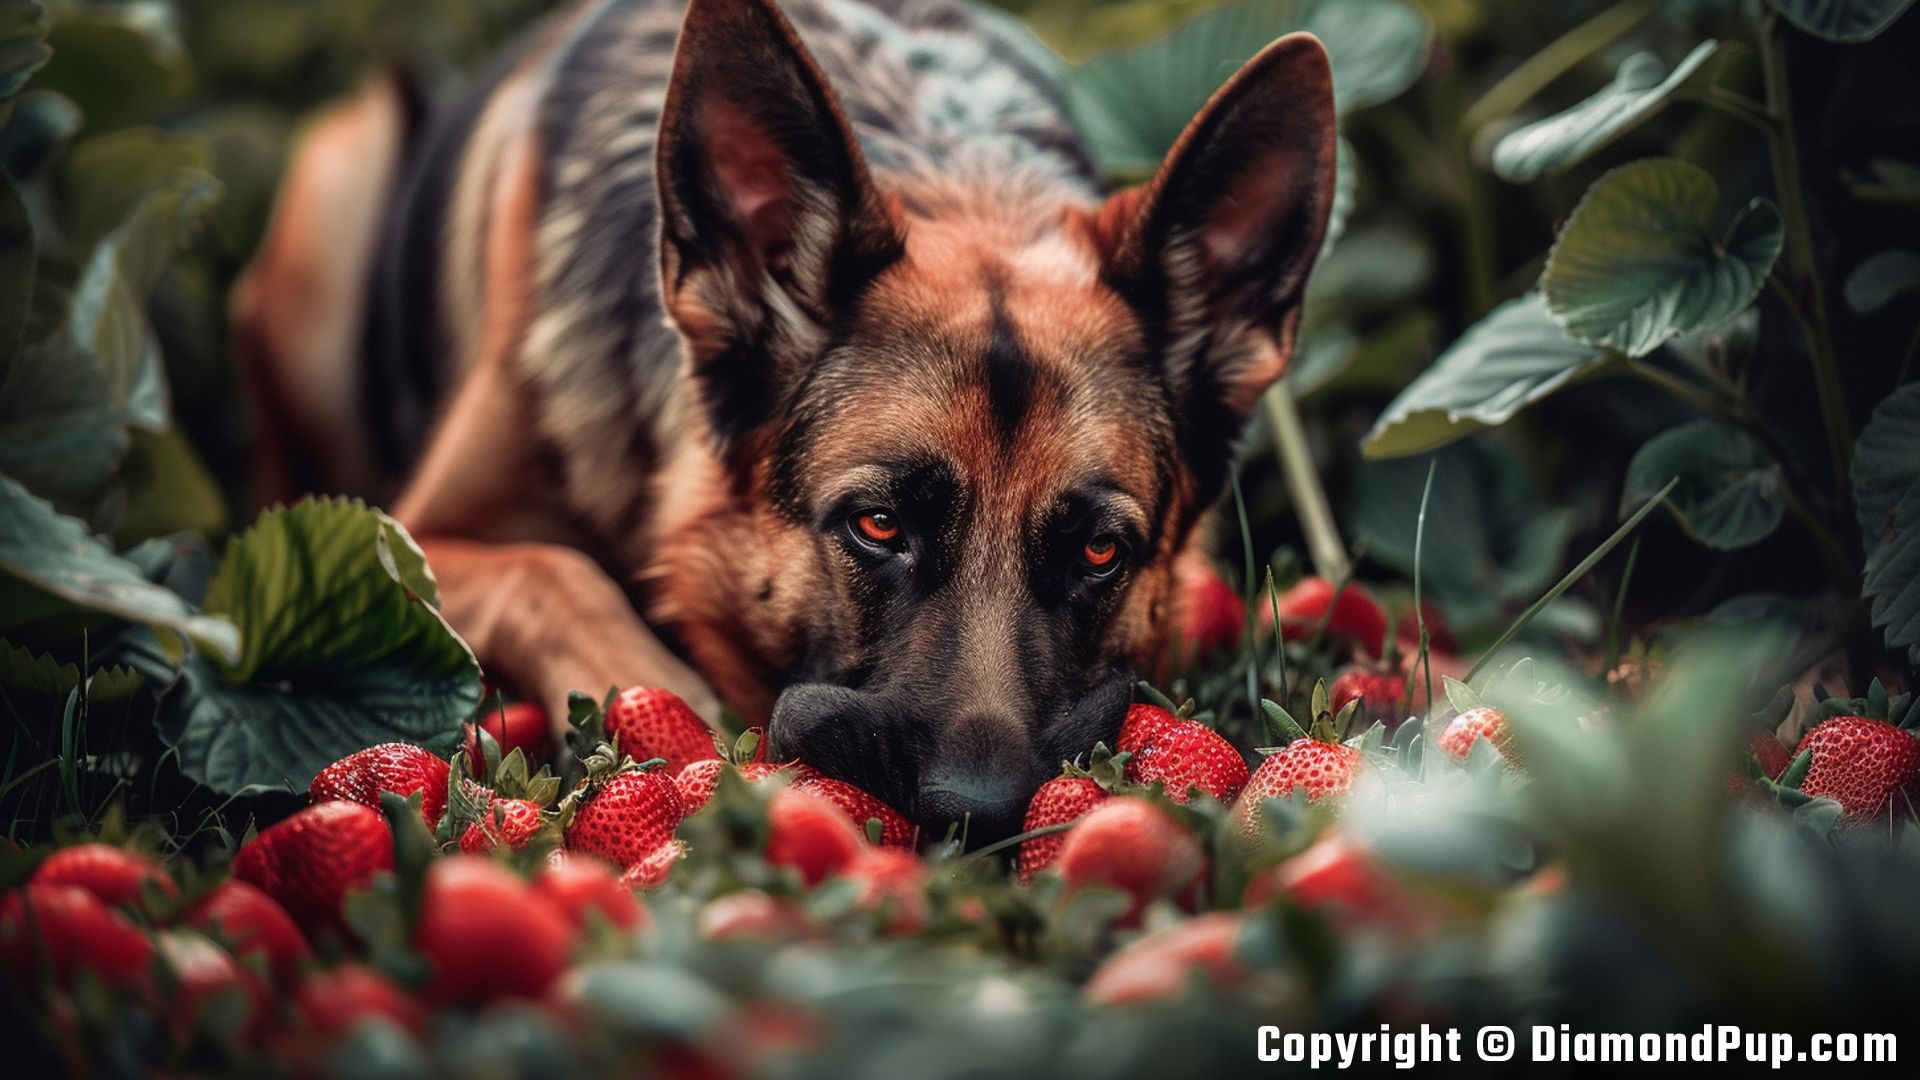 Image of a Cute German Shepherd Snacking on Strawberries